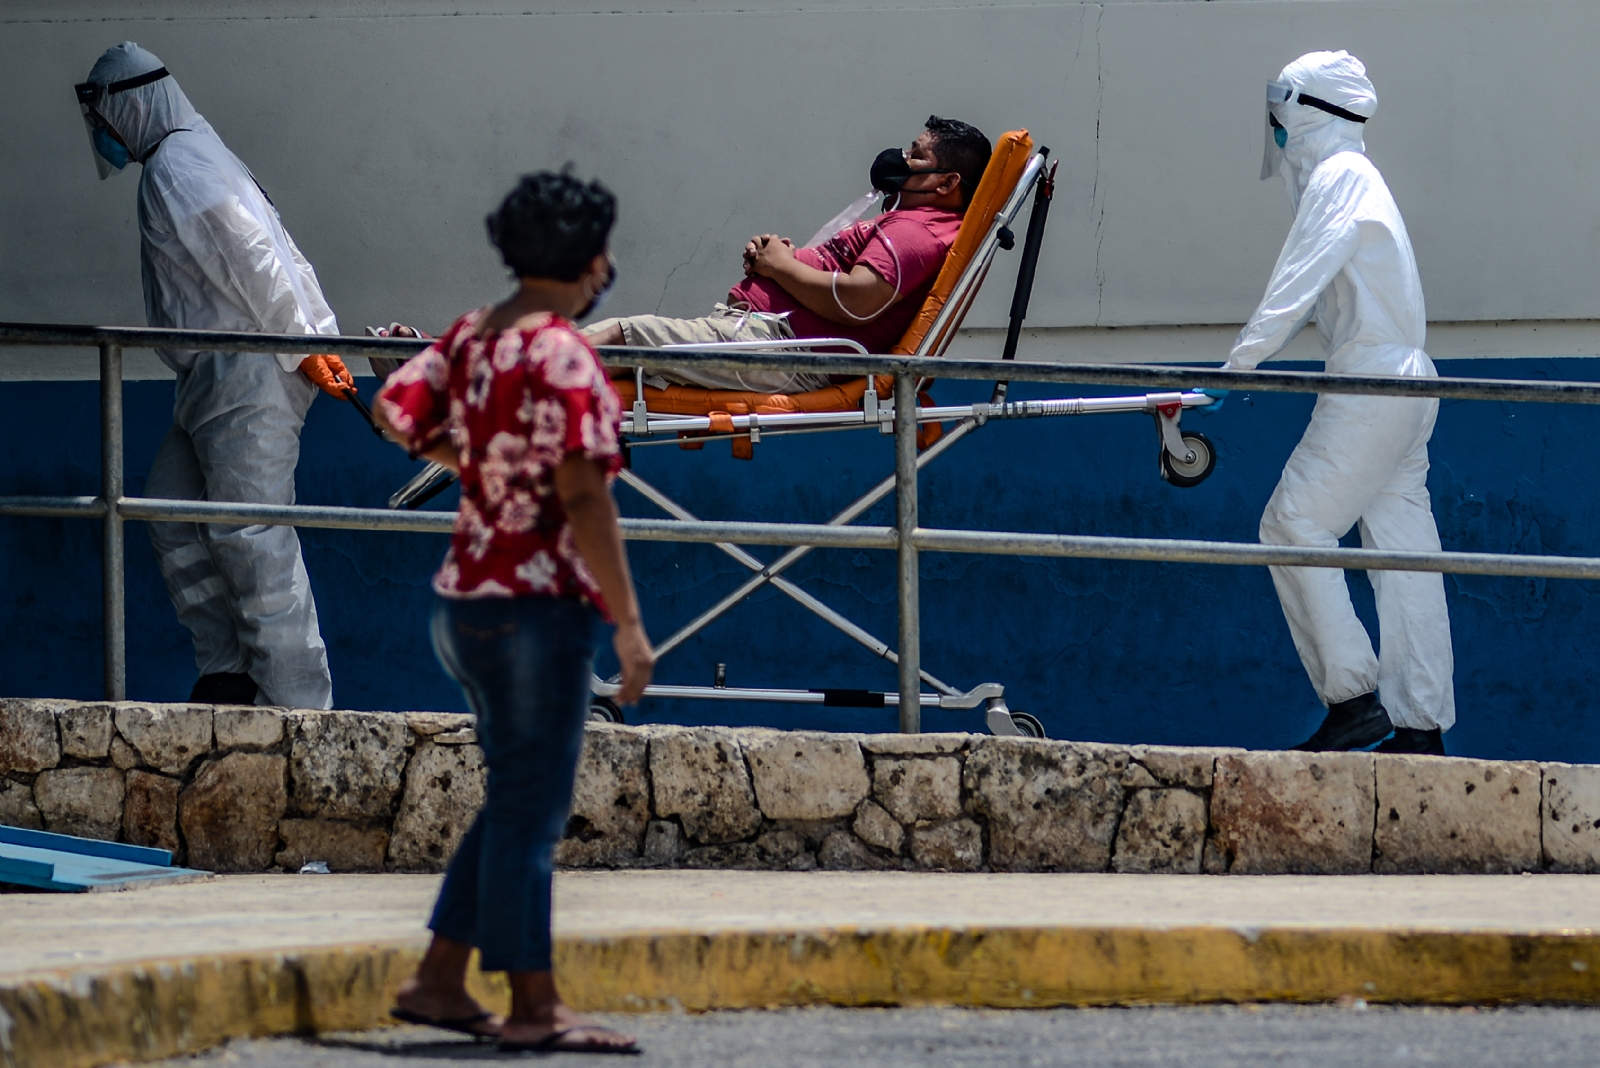 Secretaría de Salud en Quintana Roo 'olvida' emitir reporte diario de COVID-19